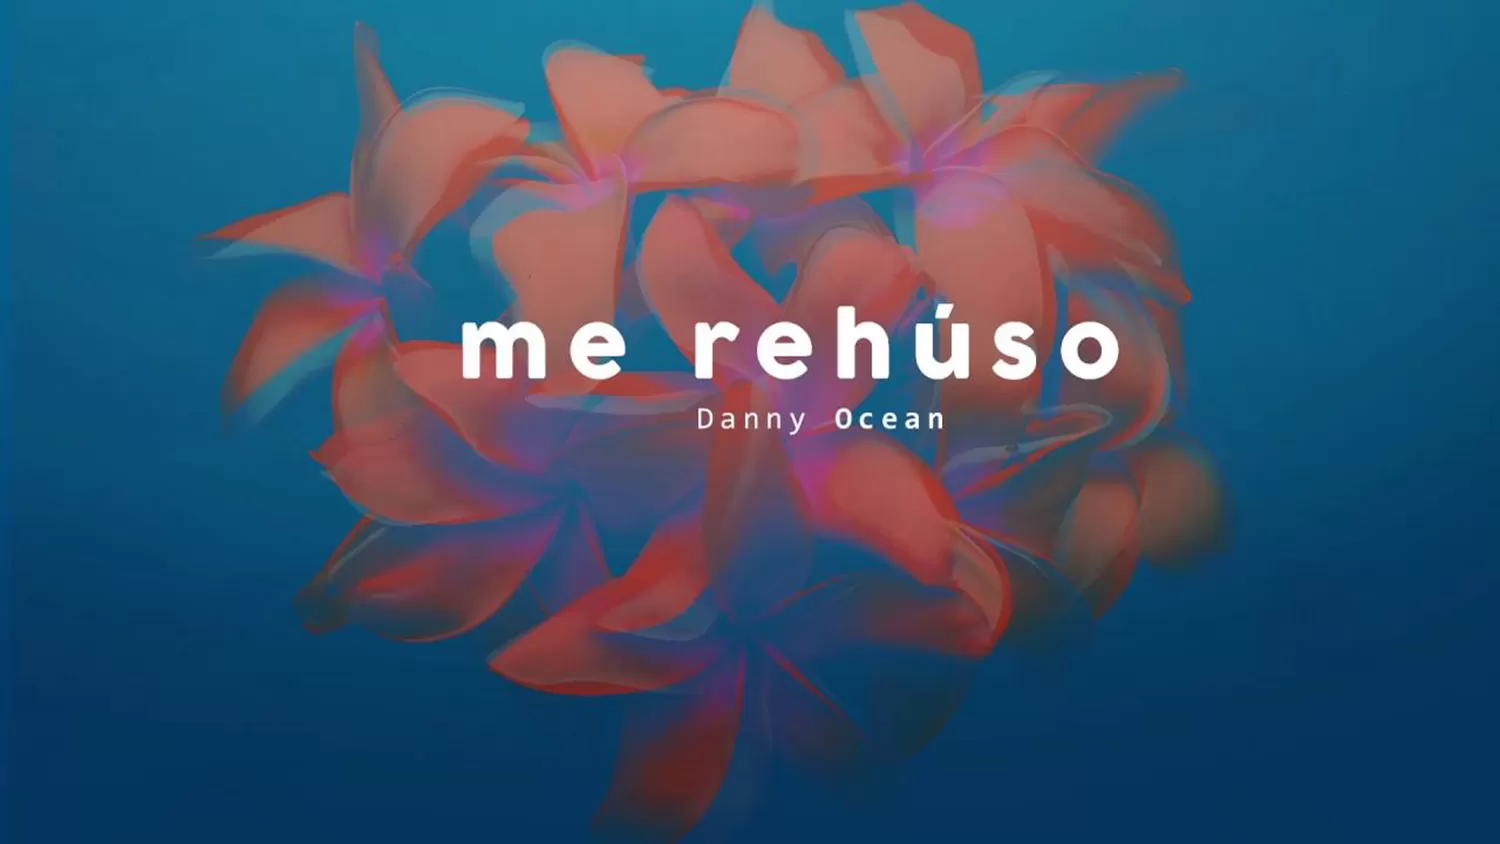 Spotify: Me rehúso, de Danny Ocean, bate récords